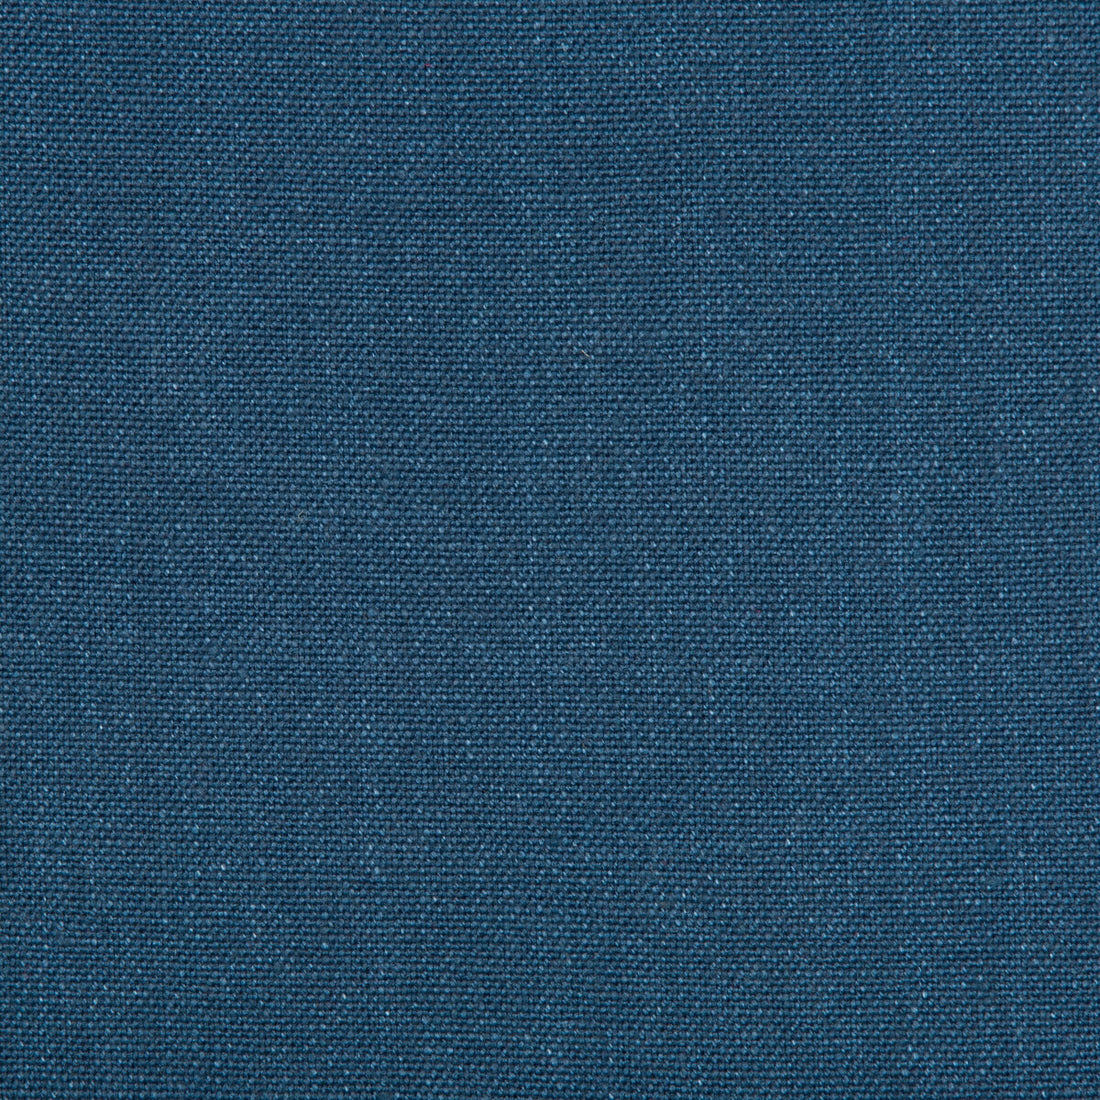 Kravet Basics fabric in 30421-5050 color - pattern 30421.5050.0 - by Kravet Basics